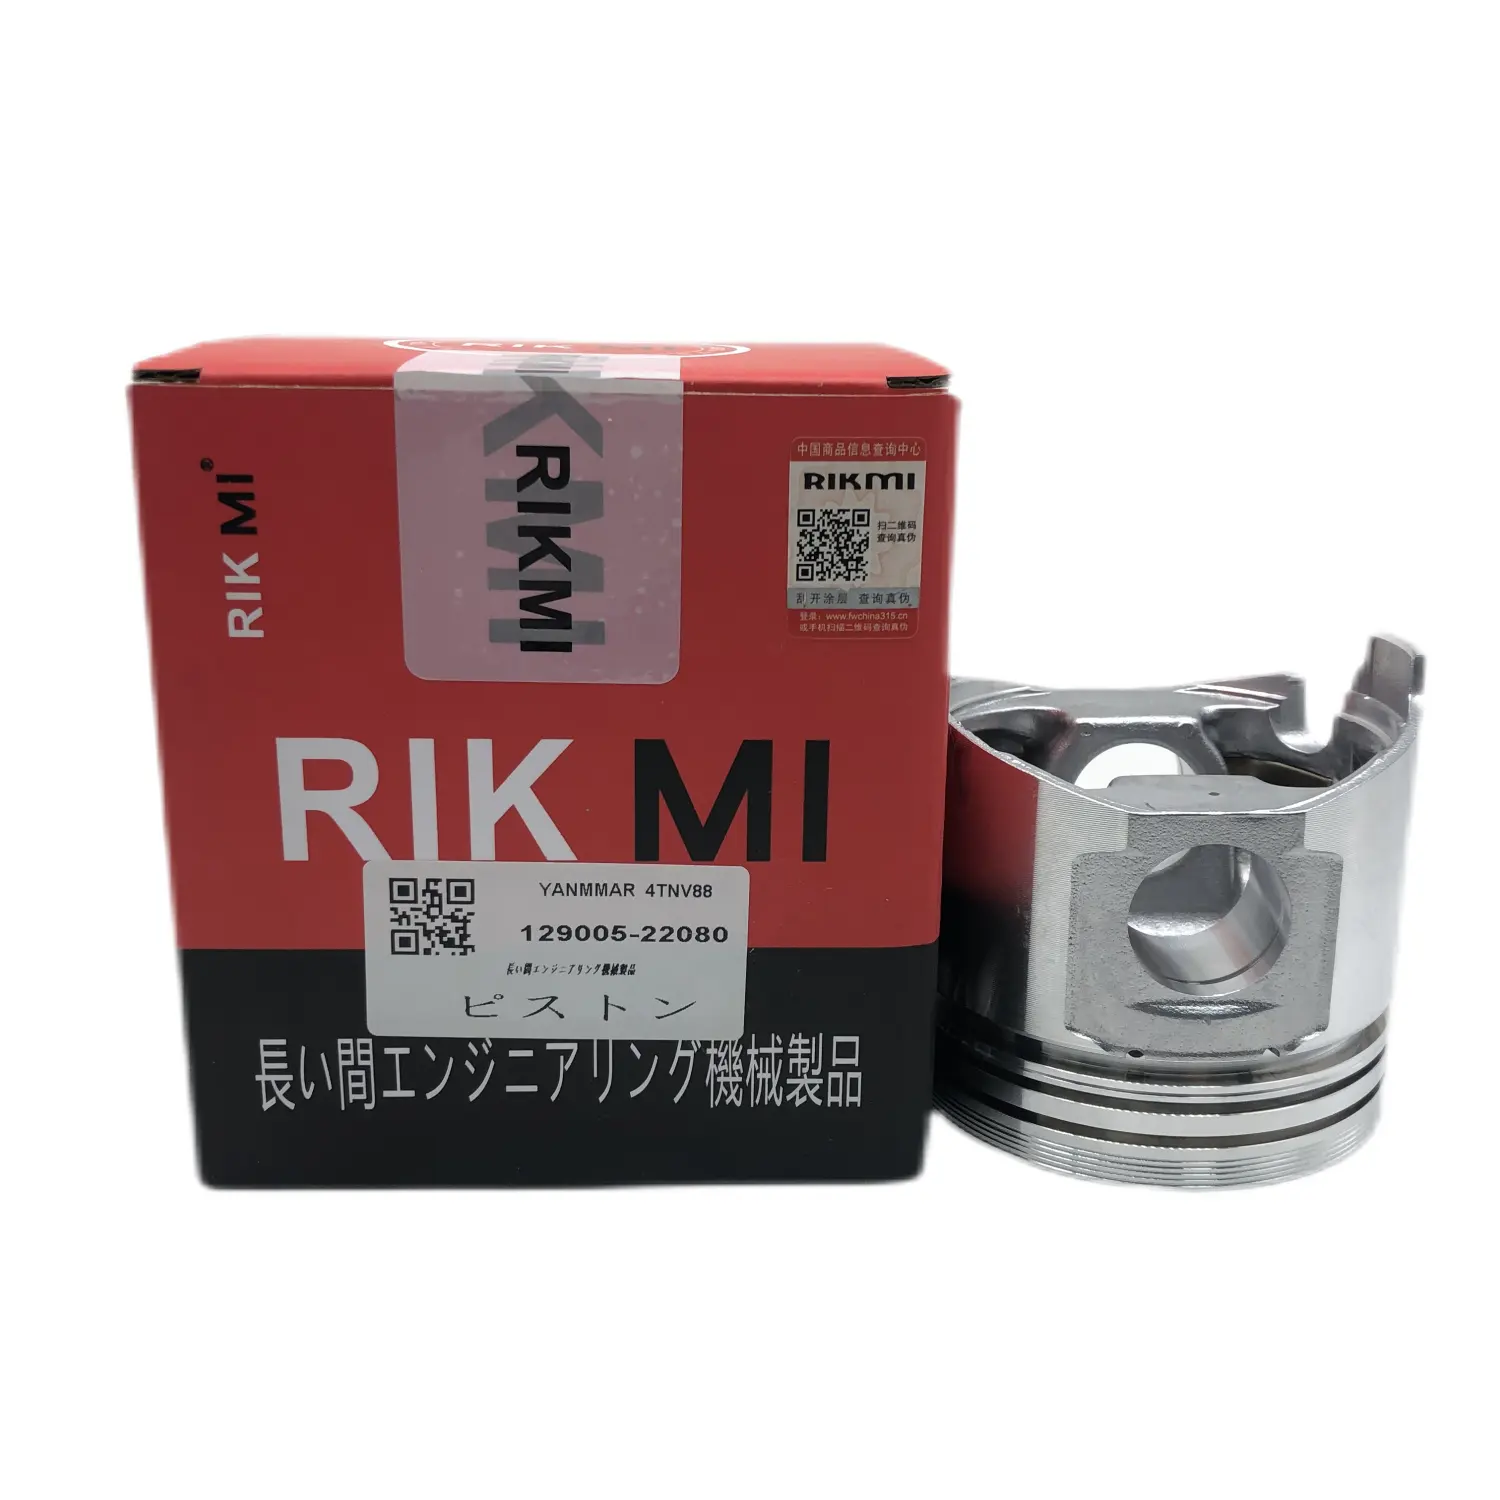 RIKMI गुणवत्ता पिस्टन 4TNV88 Yanmar डीजल इंजन मशीनरी इंजन भागों 129905-22080 के लिए इंजन की मरम्मत किट फैक्टरी प्रत्यक्ष